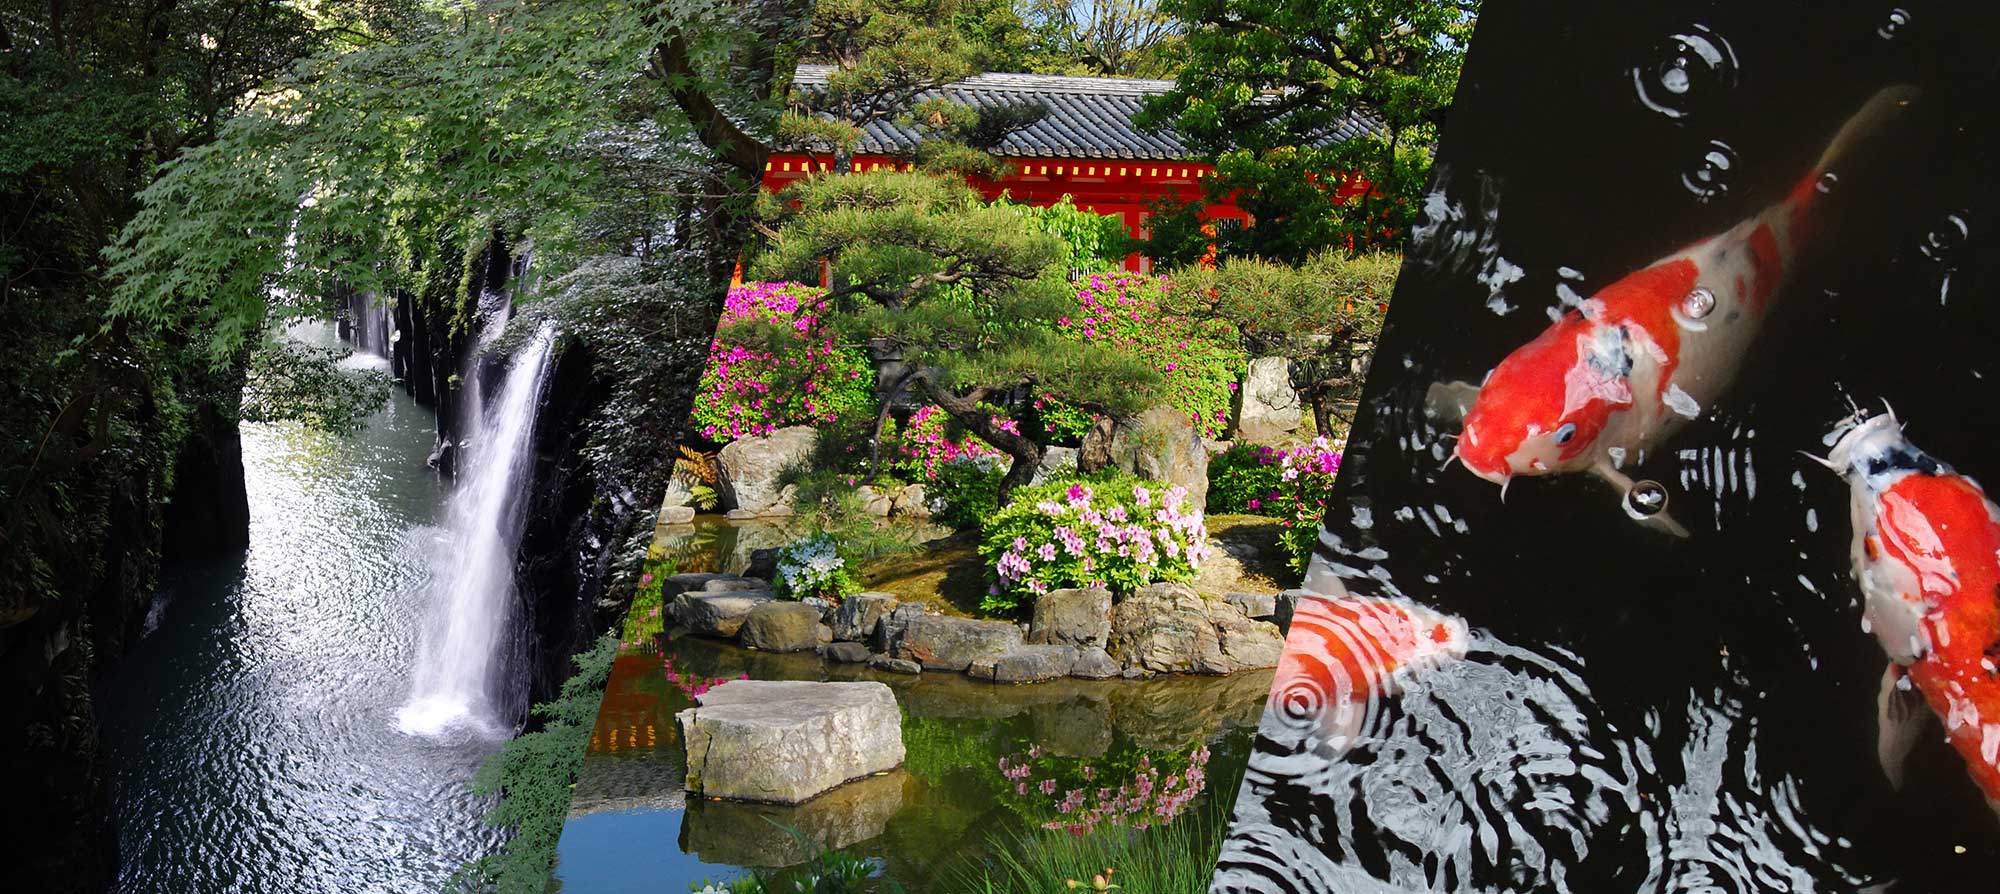 Коллаж из фотографий: живописное ущелье Такатихо, территория синтоистского храма в цветах, декоративный карп